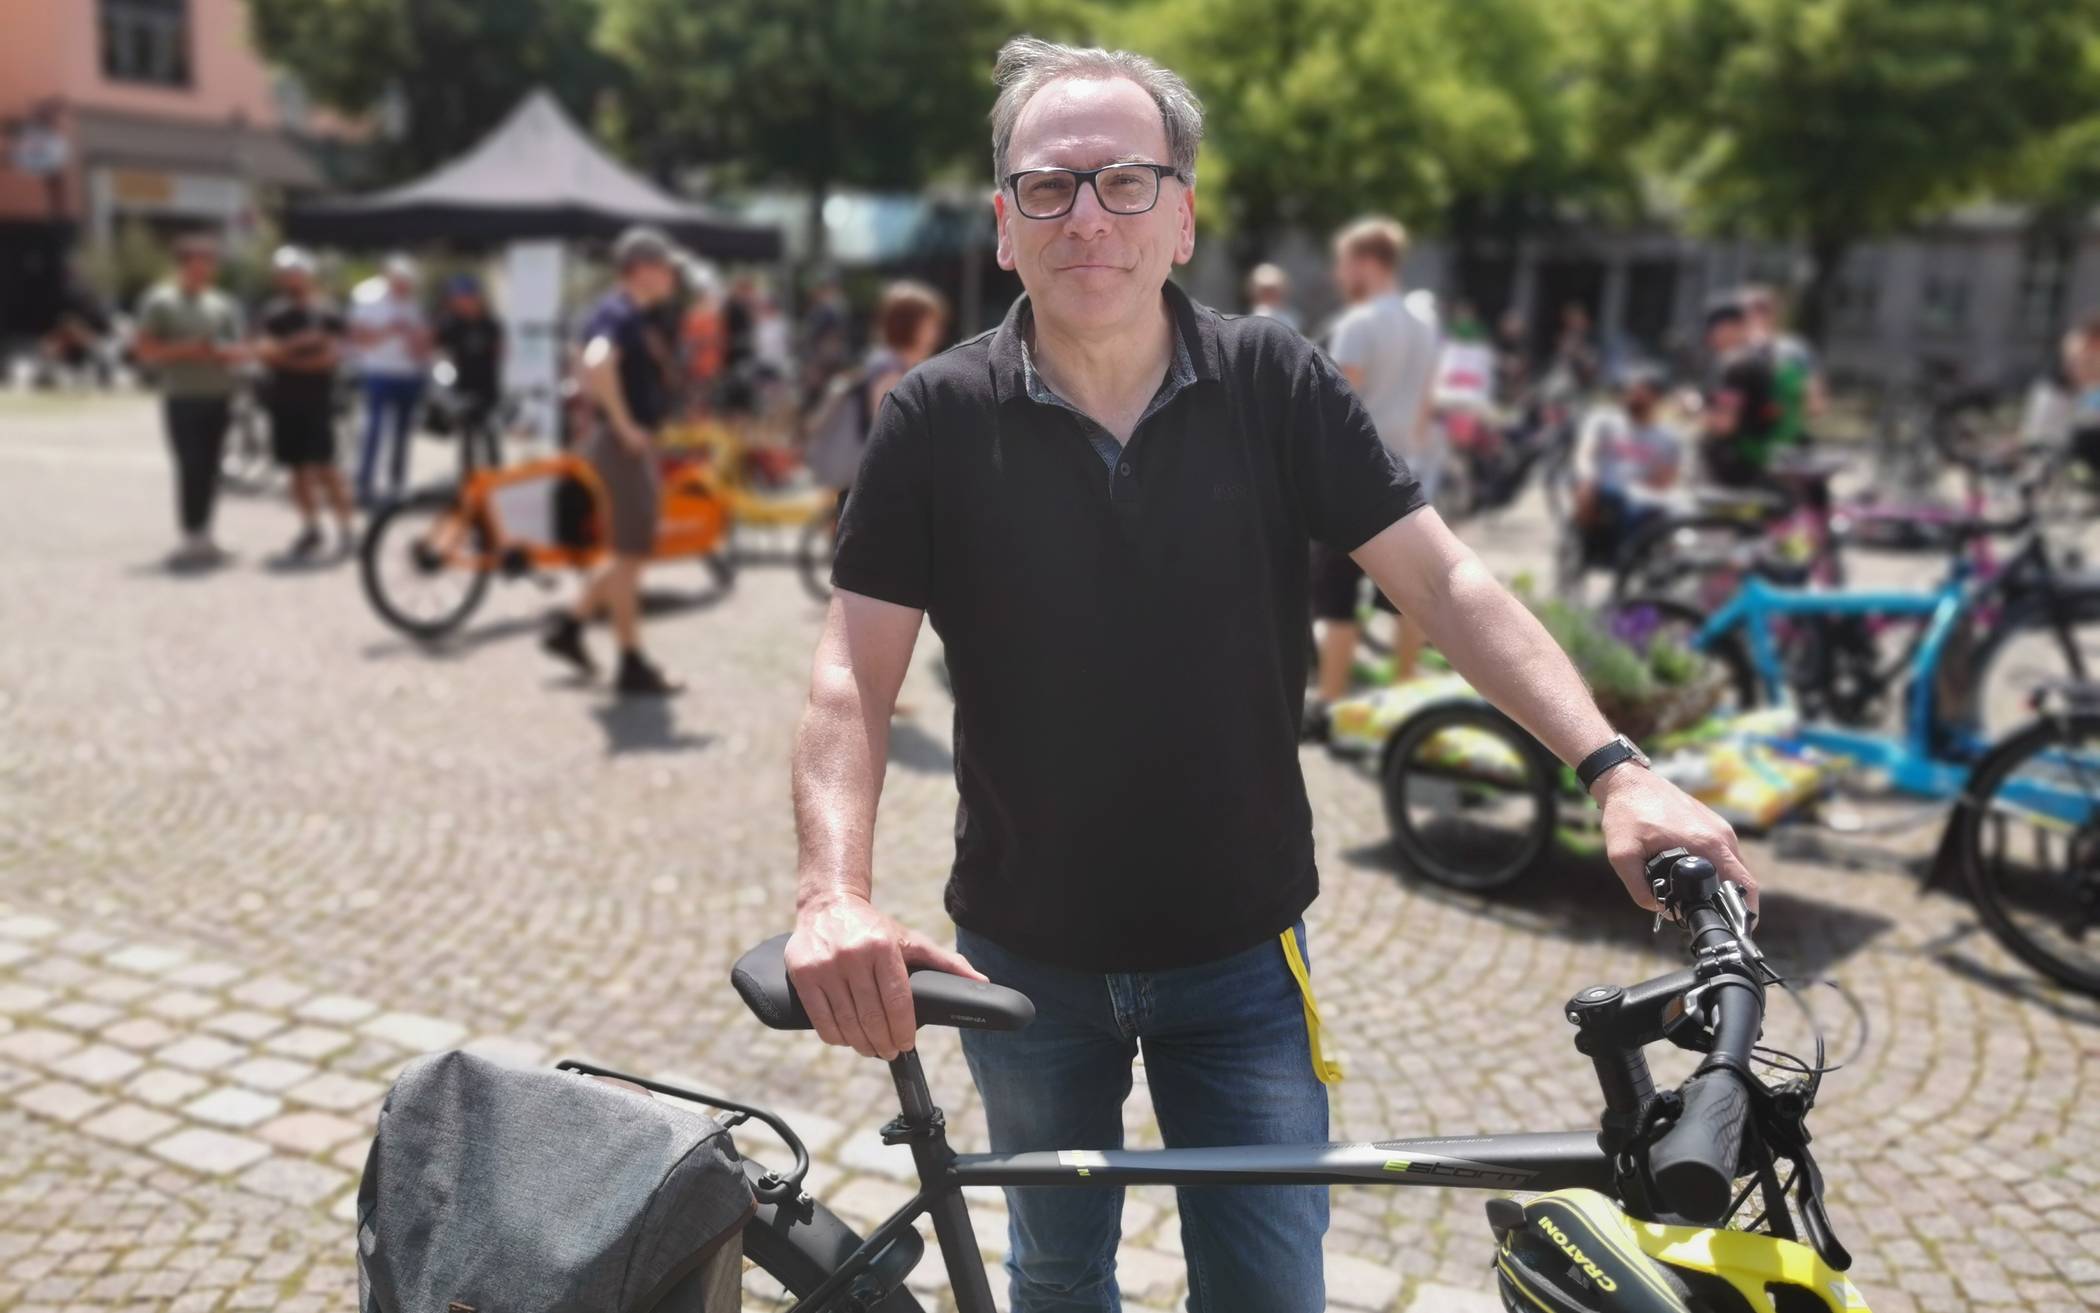 Auch Oberbürgermeister Andreas Mucke, der selbst gern Rad fährt, will den Worten jetzt Taten folgen lassen. Mit begrenztem Budget wird das nicht einfach ...